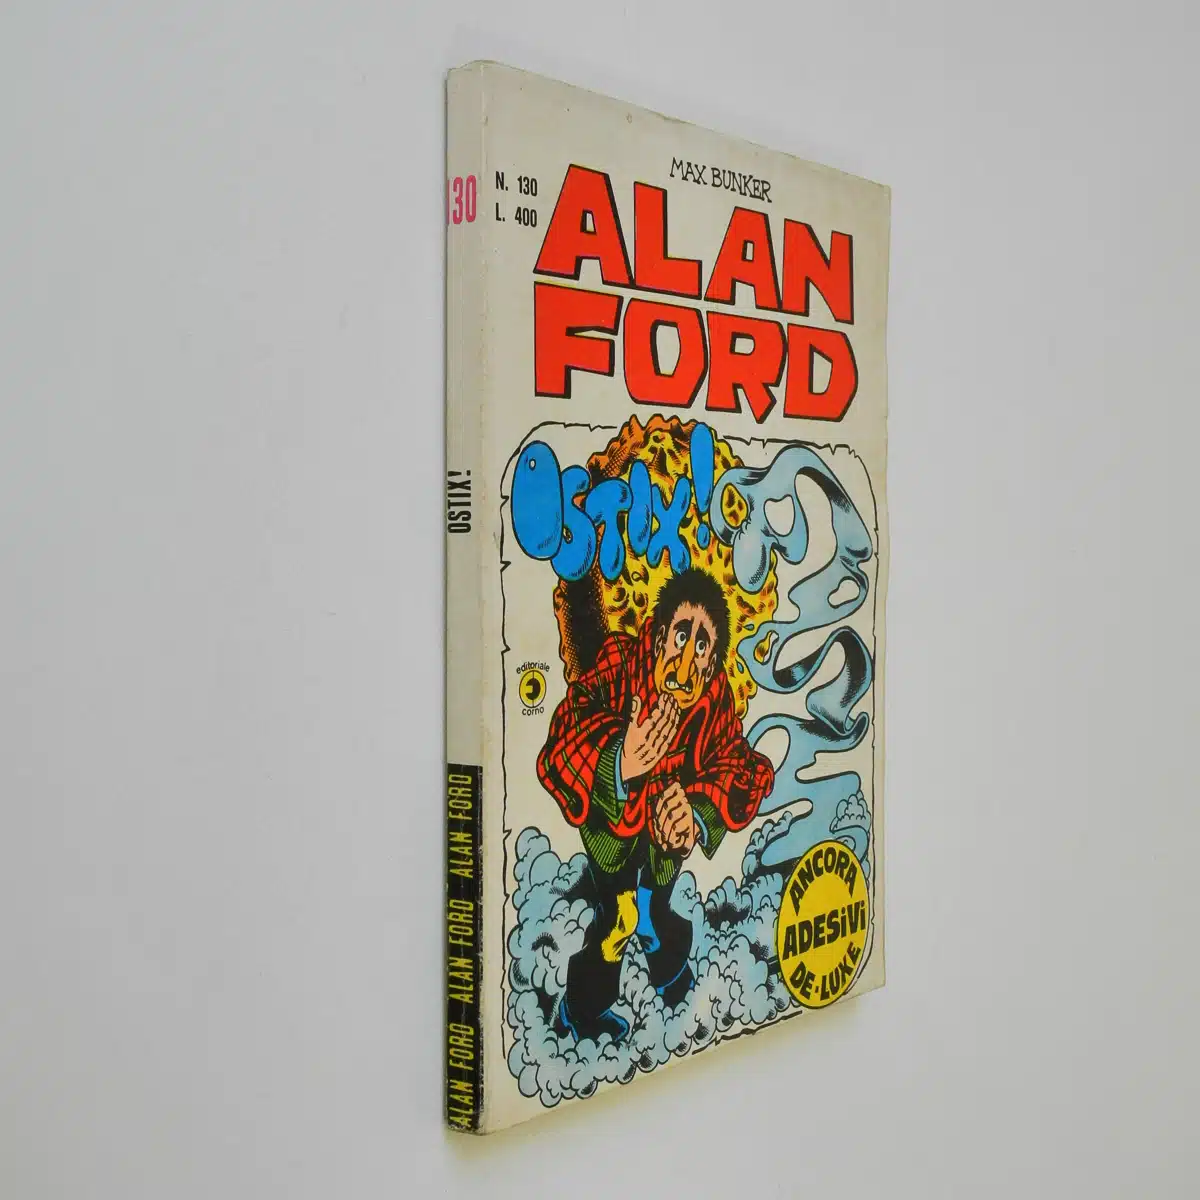 Alan Ford n. 130 con Adesivi Ostix